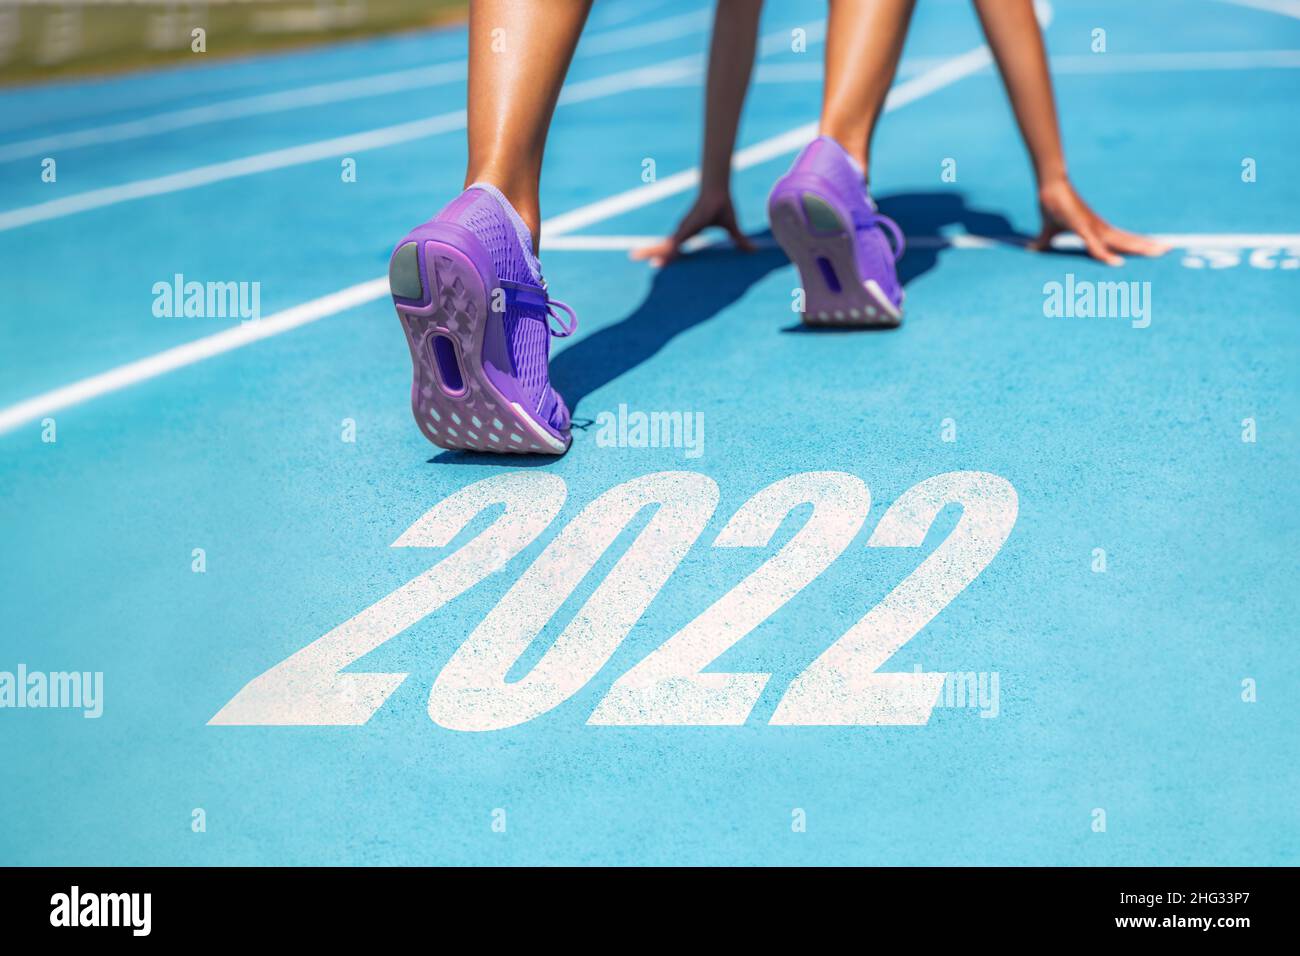 Nuovo anno di risoluzione 2022 fitness perdita di peso sfida atleta donna che corre a gara pronta set go motivazione per ottenere in forma Foto Stock